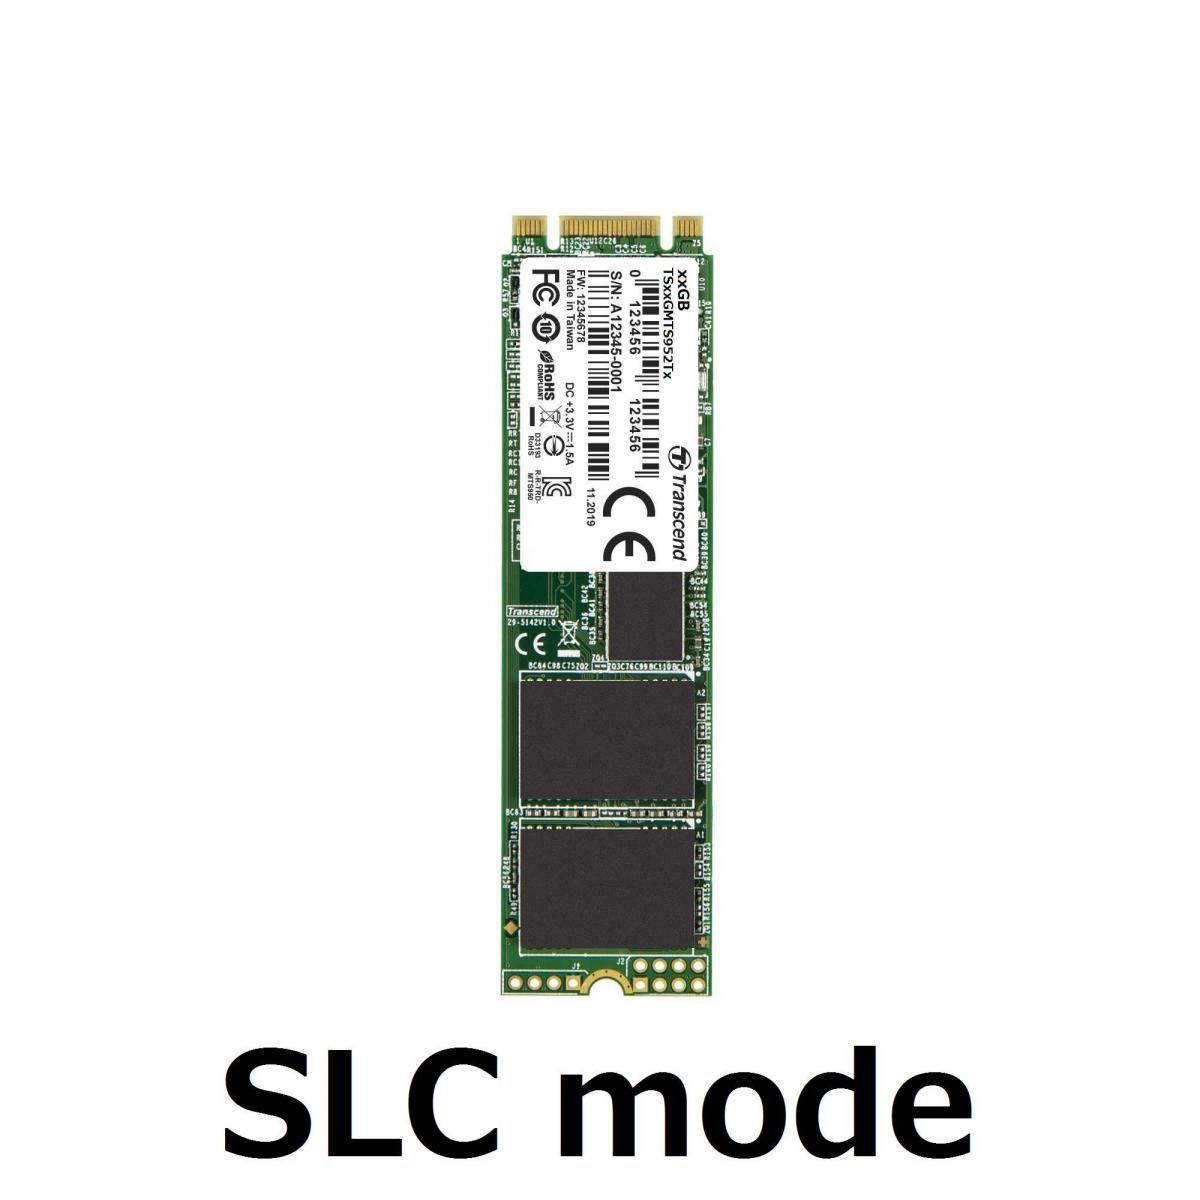 Transcend SLC NAND yongalı M.2 SSD’lerini duyurdu